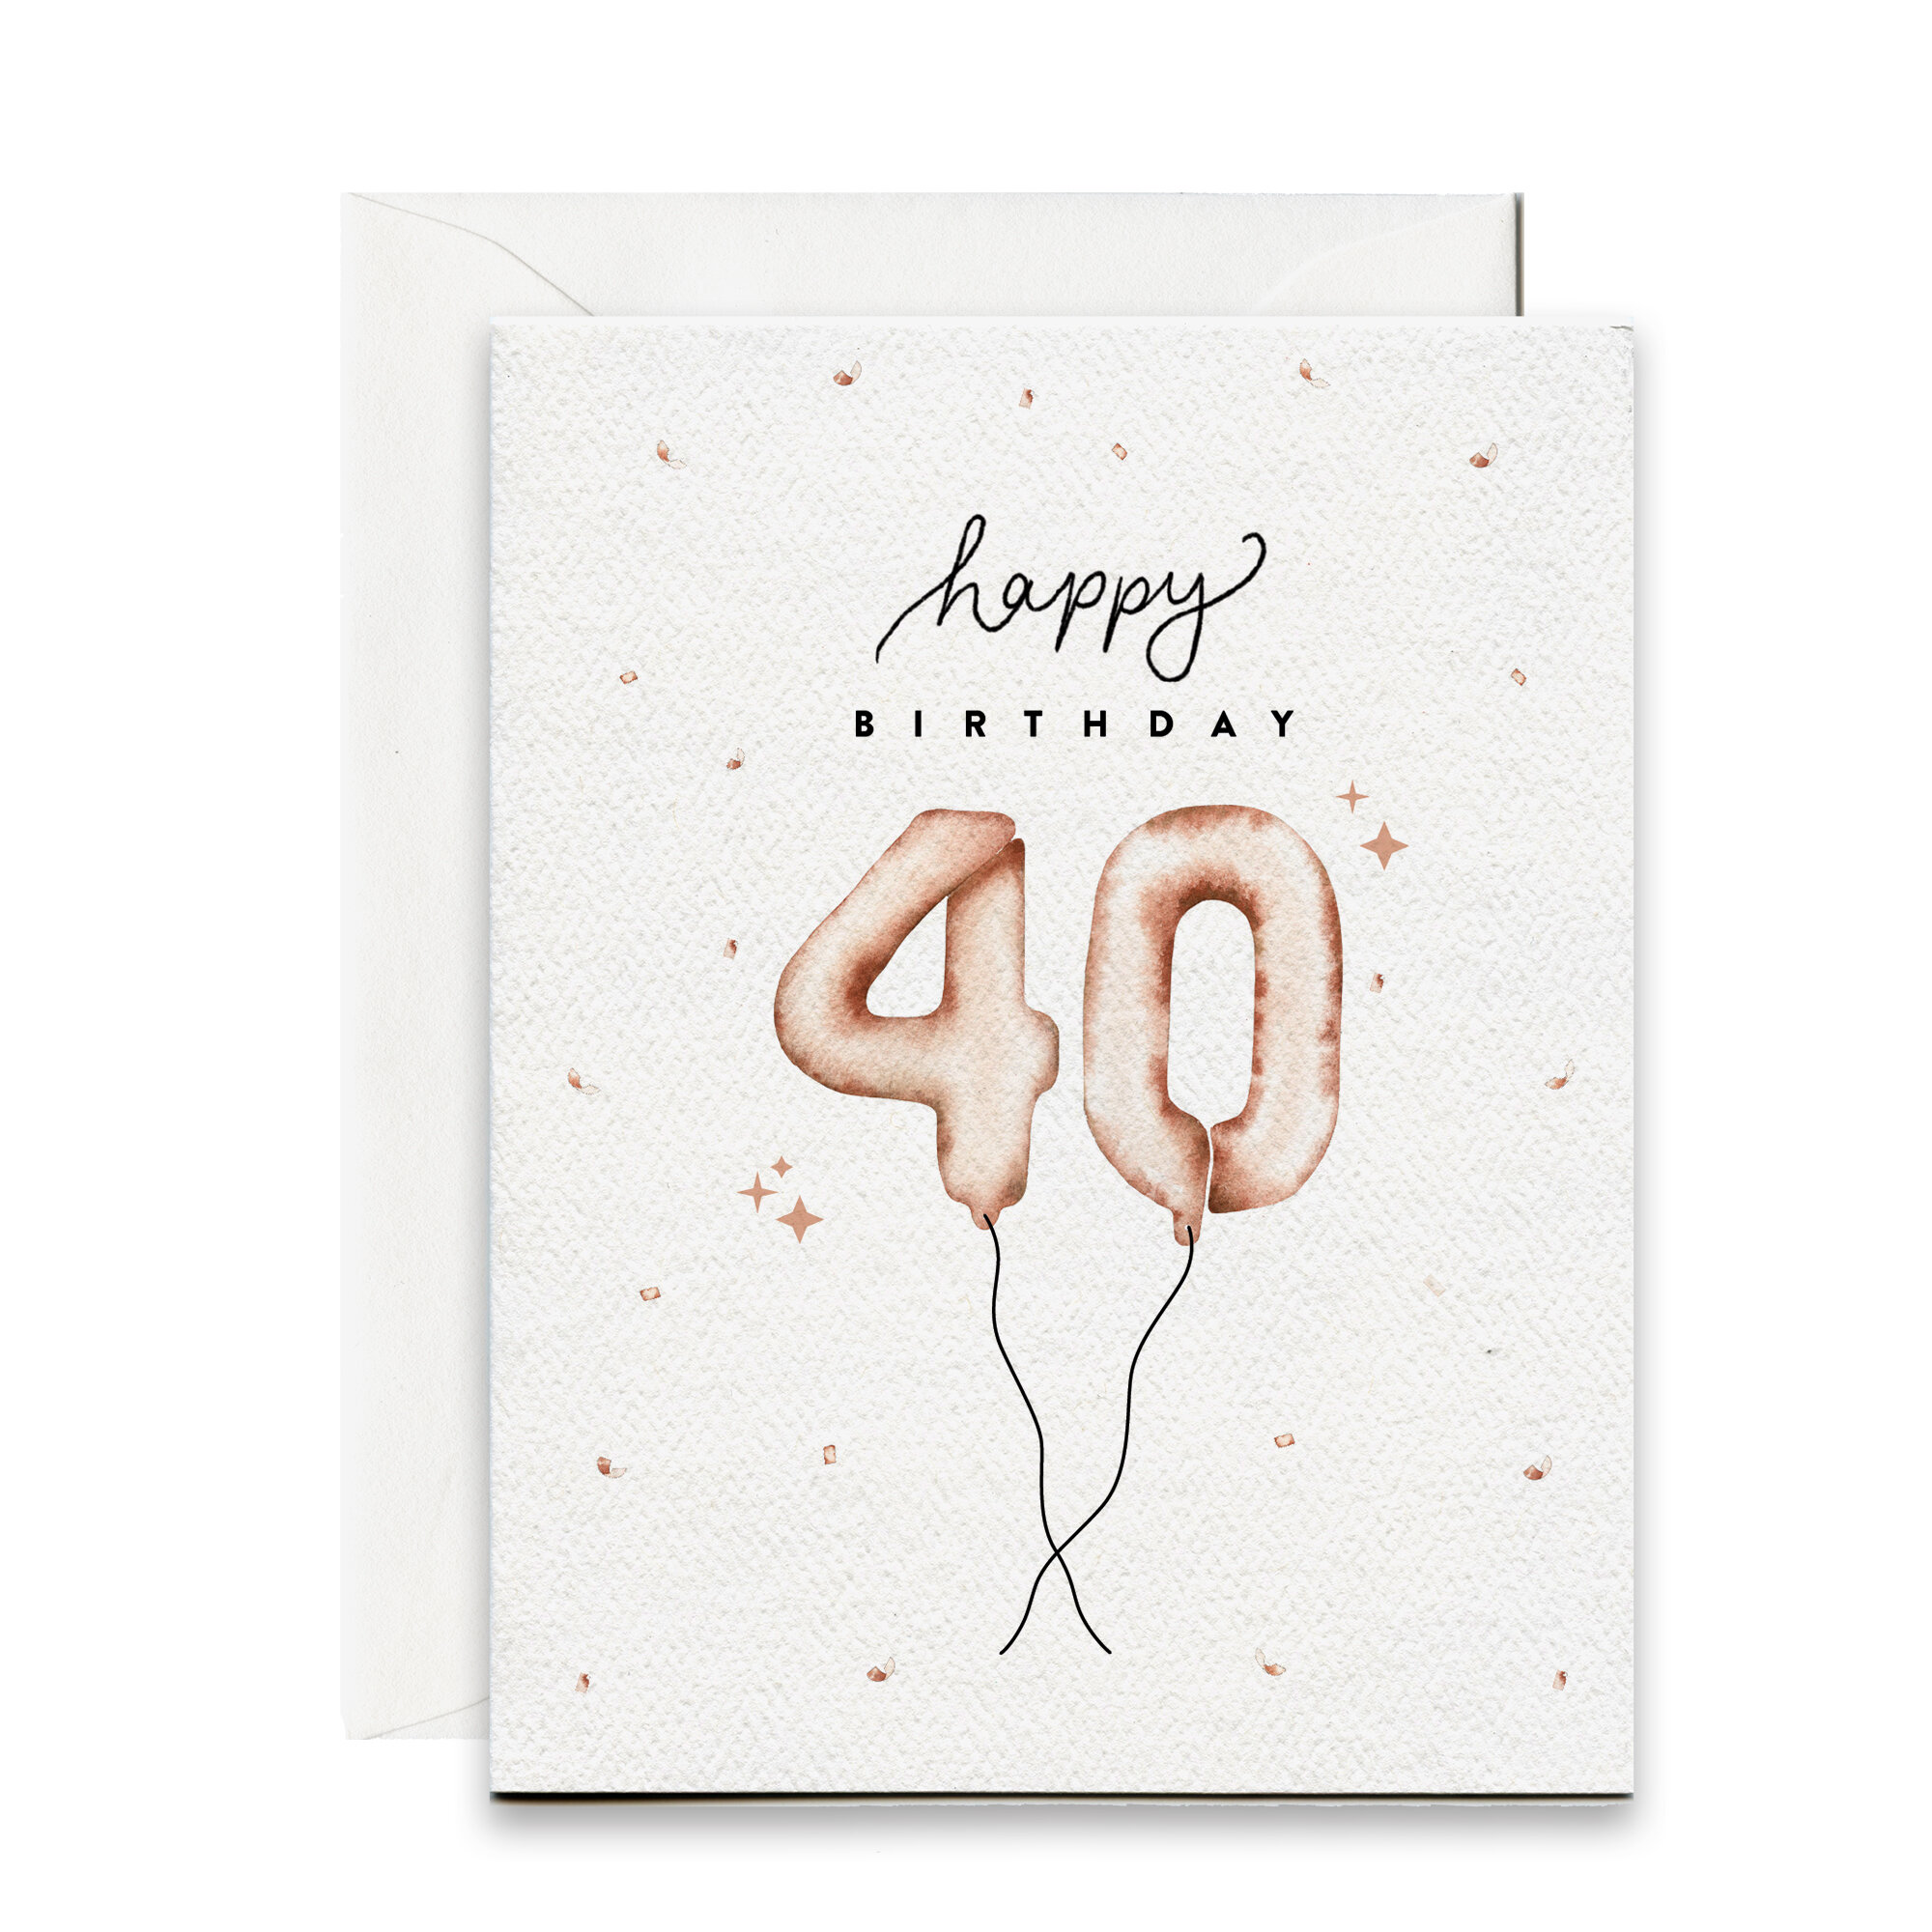 Verlengen Port Verstikken Happy 40th Birthday Card » Pip & Cricket